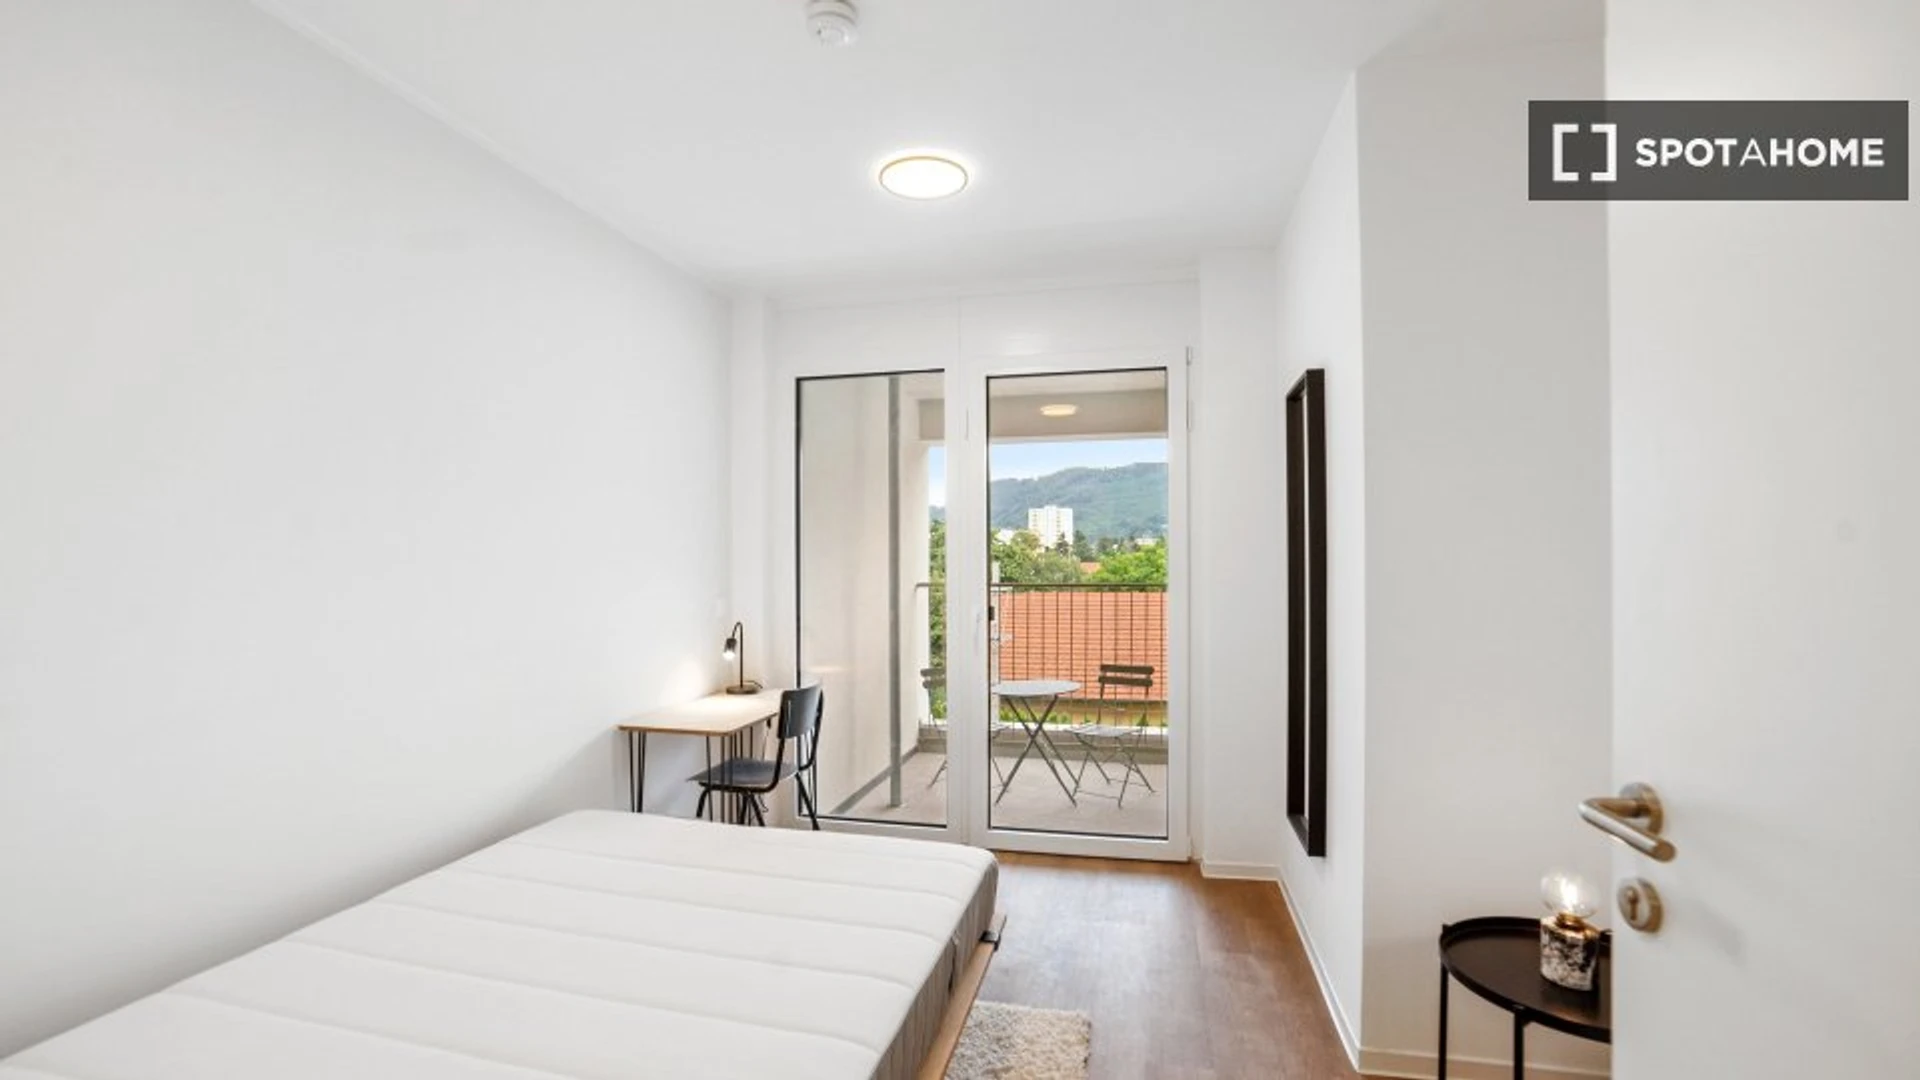 Zimmer mit Doppelbett zu vermieten Graz